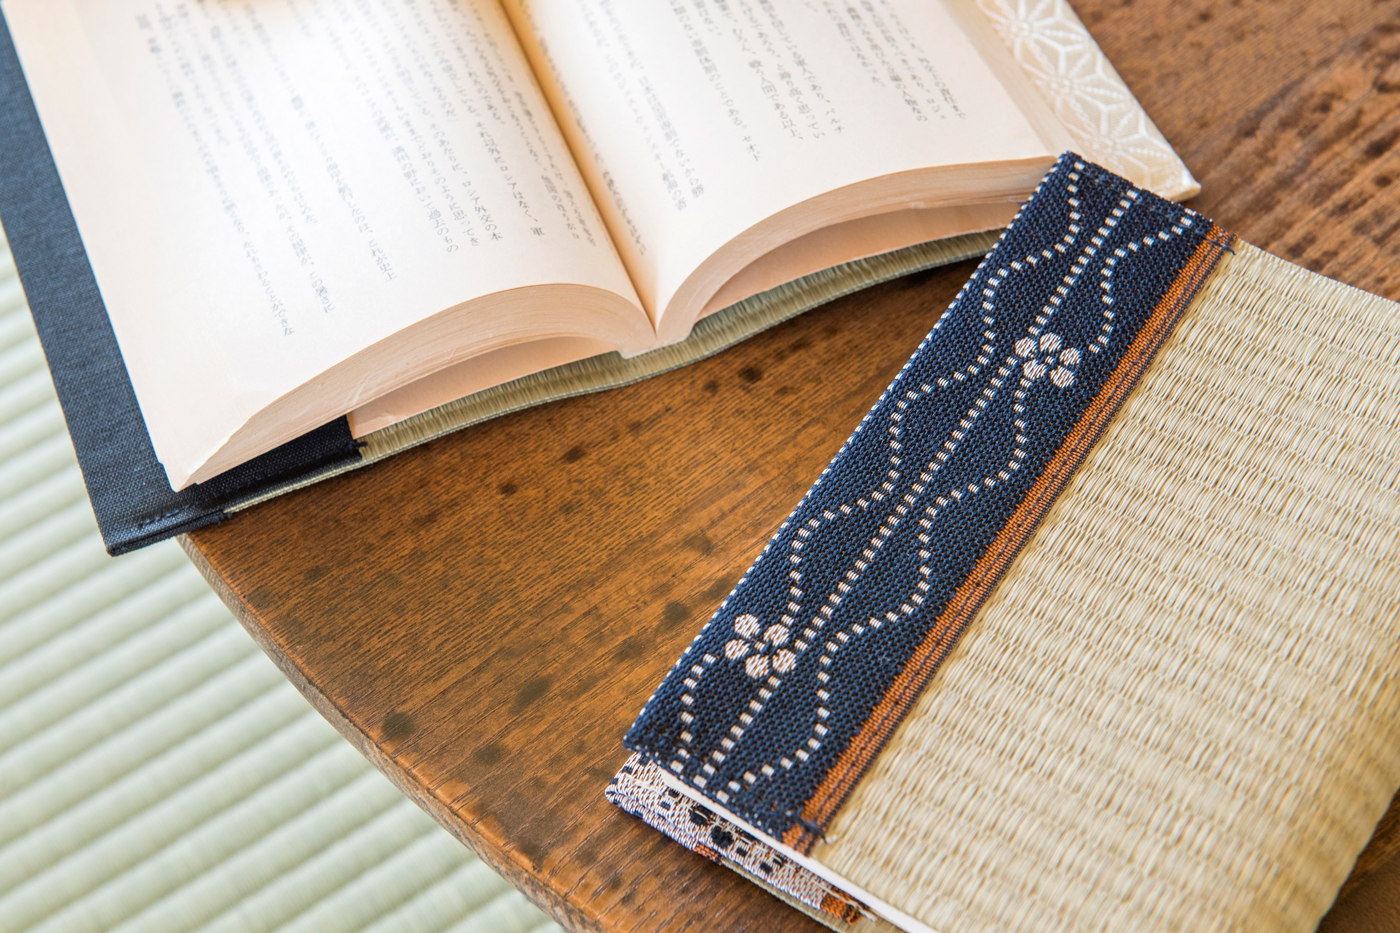 「イ草香るブックカバー」の畳の質感と爽やかな香りで、癒やしの読書時間を。